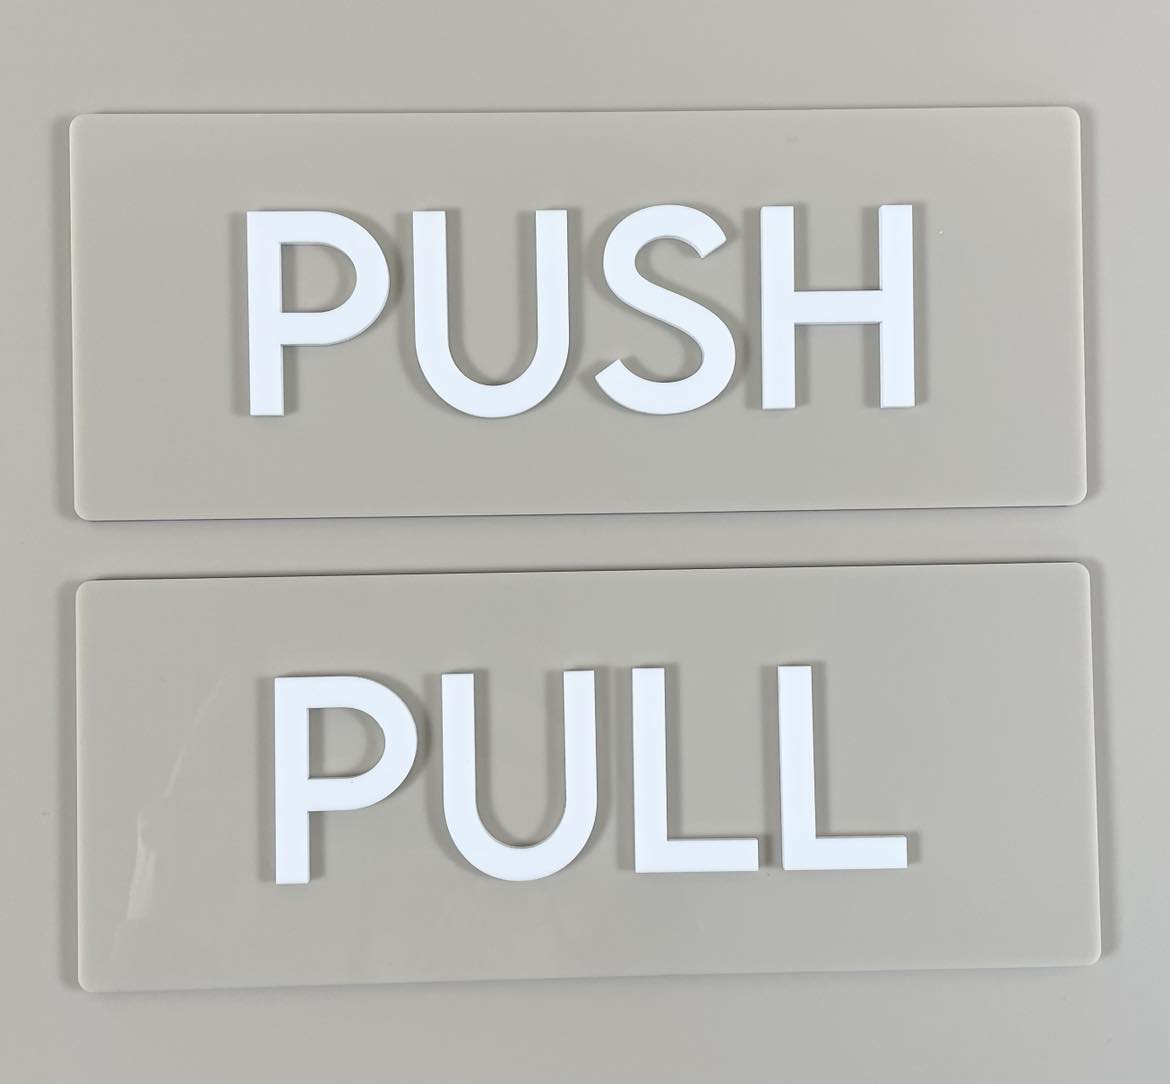 Push pull sign